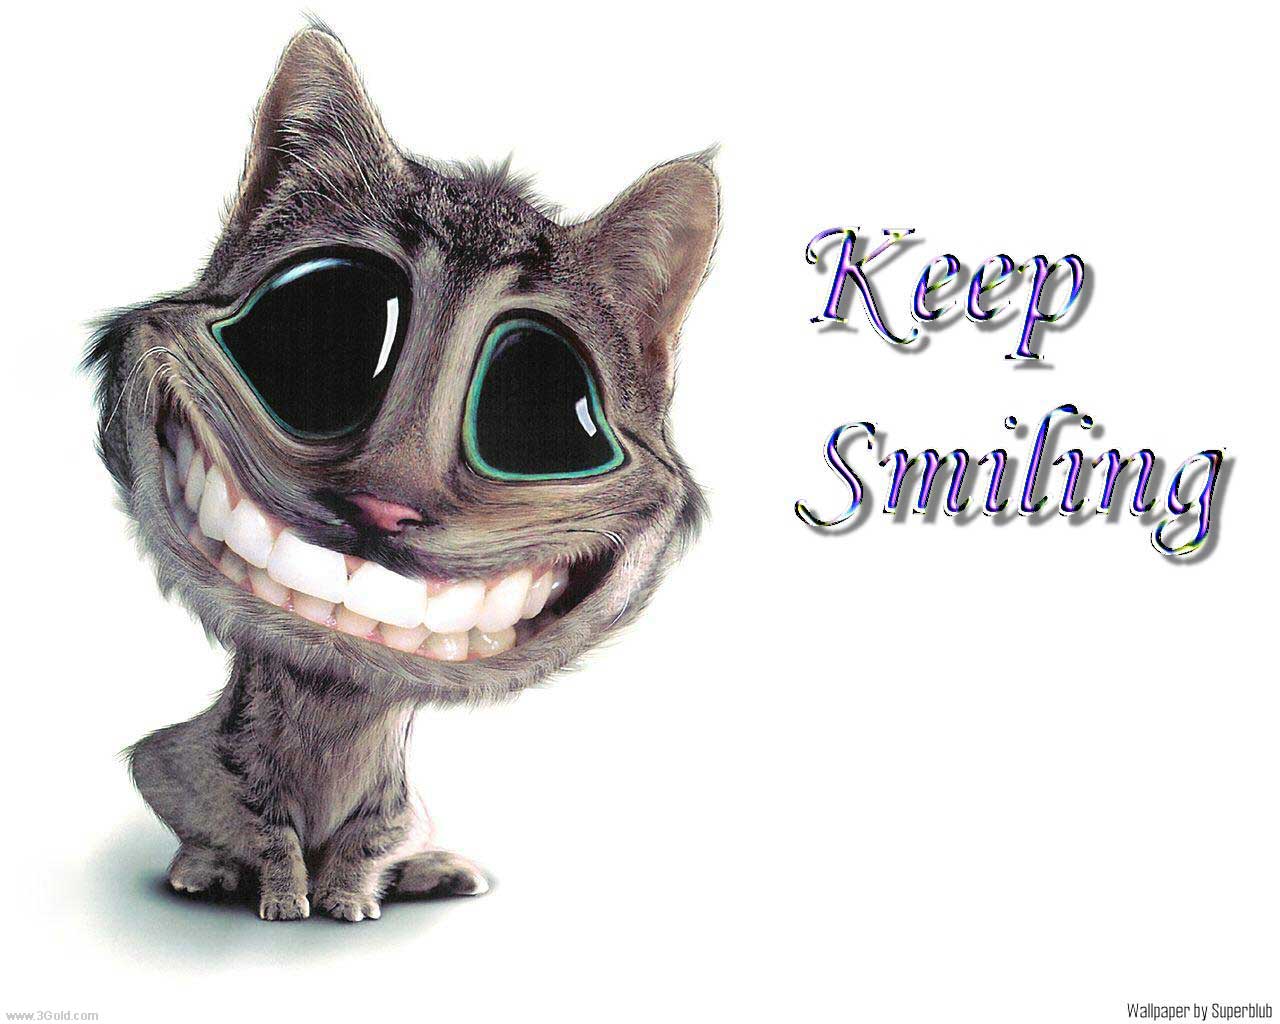 [keep_smiling.jpg]